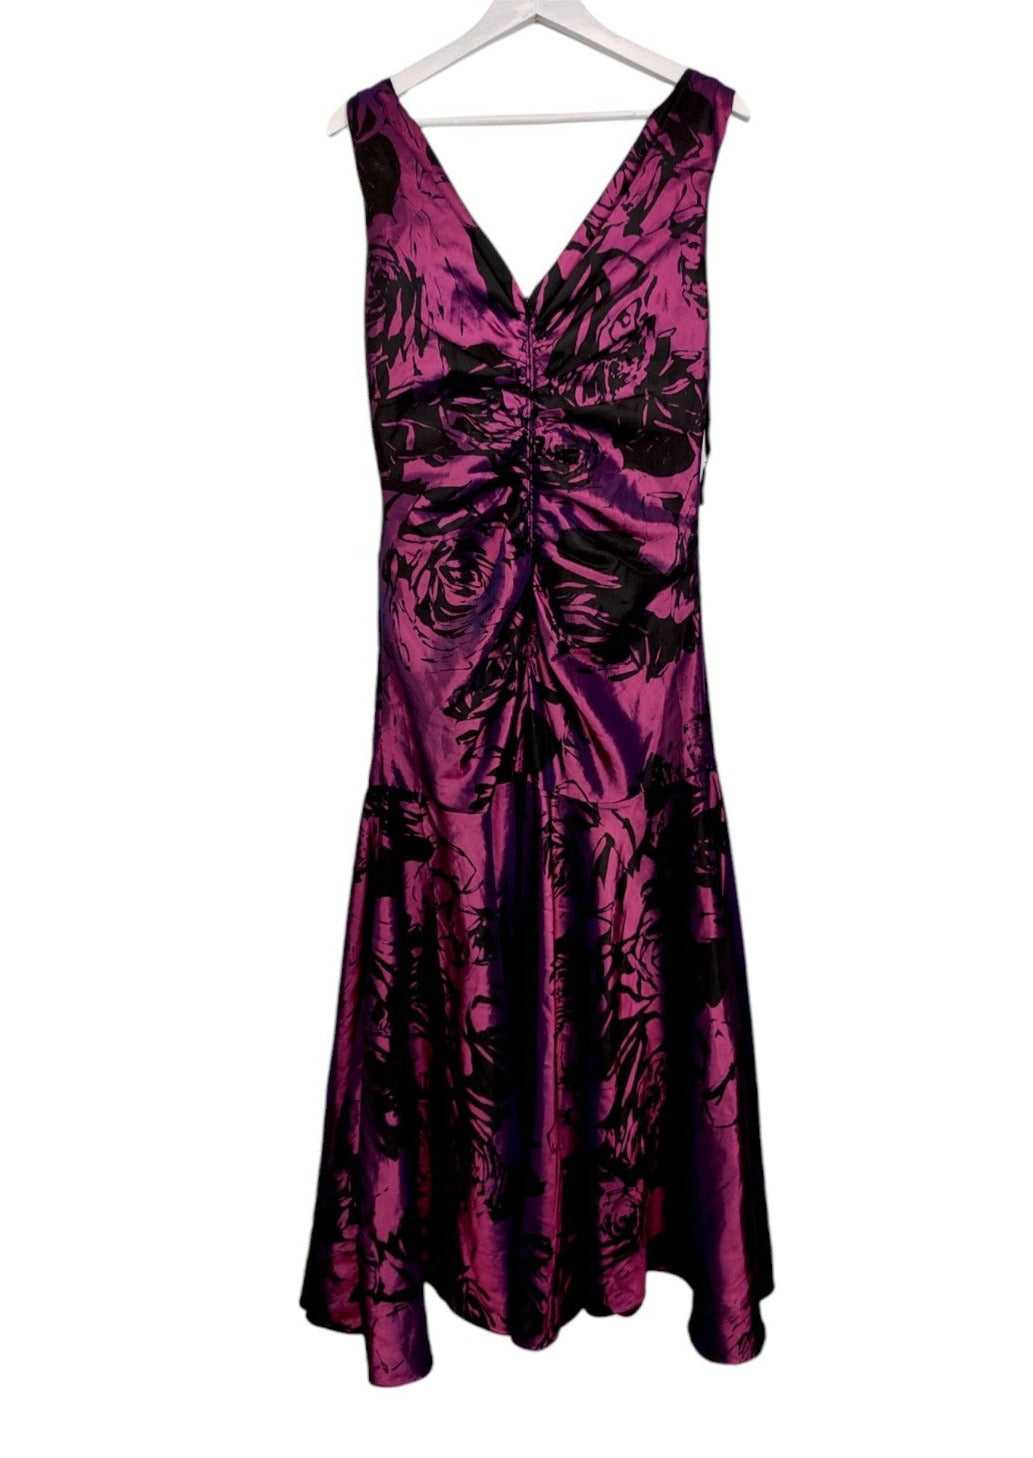 Vintage, Maxi, Σατέν Βραδινό Φόρεμα MEDICI σε Μωβ-Μαύρο χρώμα με Ασορτί Πασμίνα (Large)